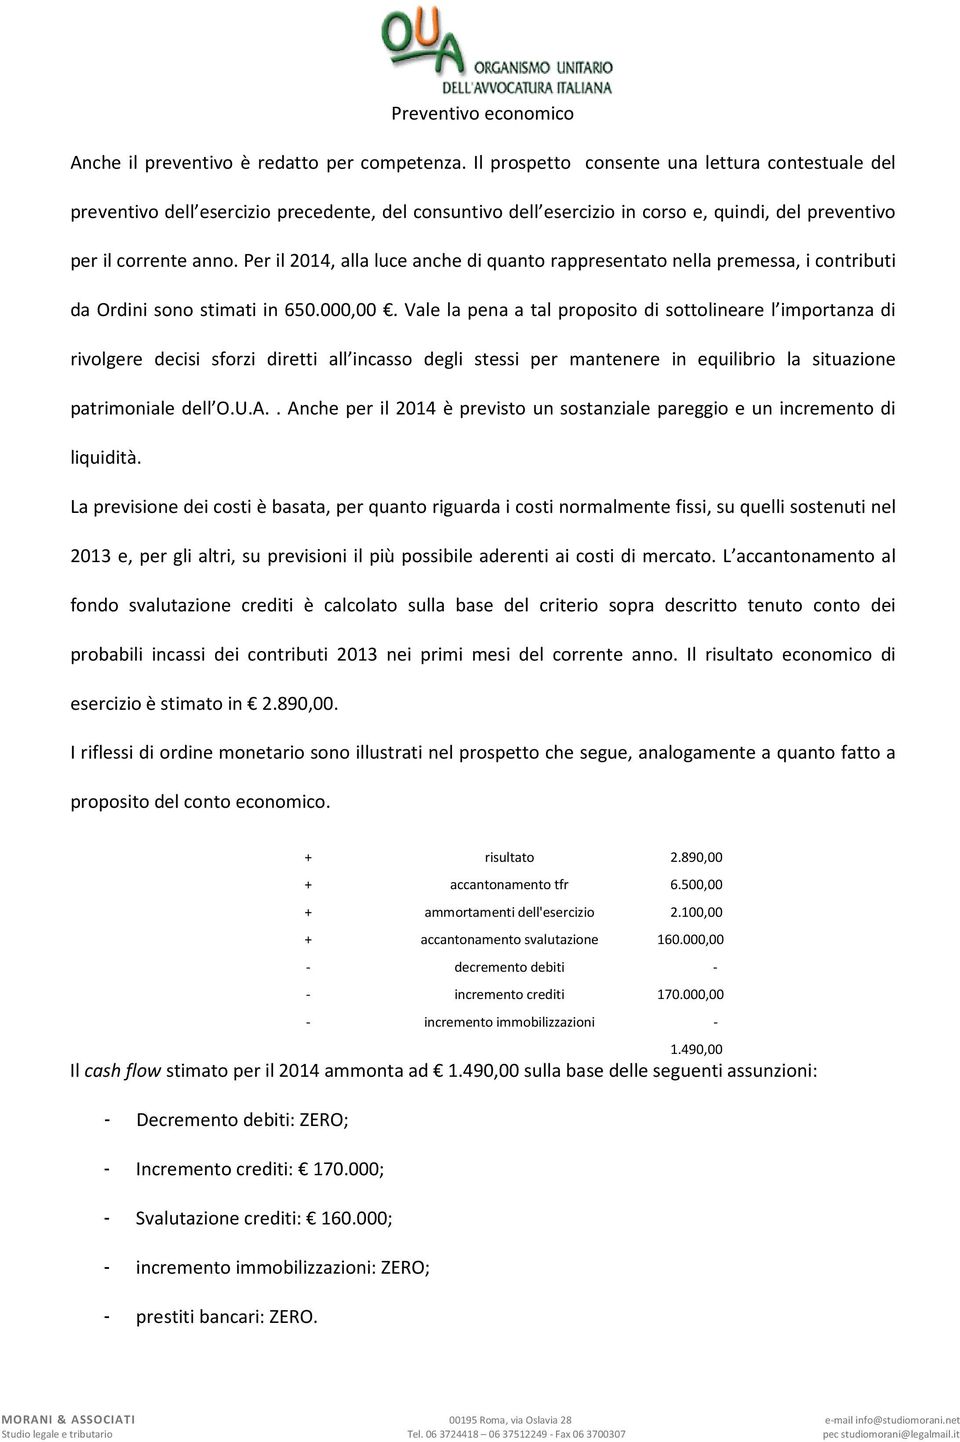 Per il 2014, alla luce anche di quanto rappresentato nella premessa, i contributi da Ordini sono stimati in 650.000,00.